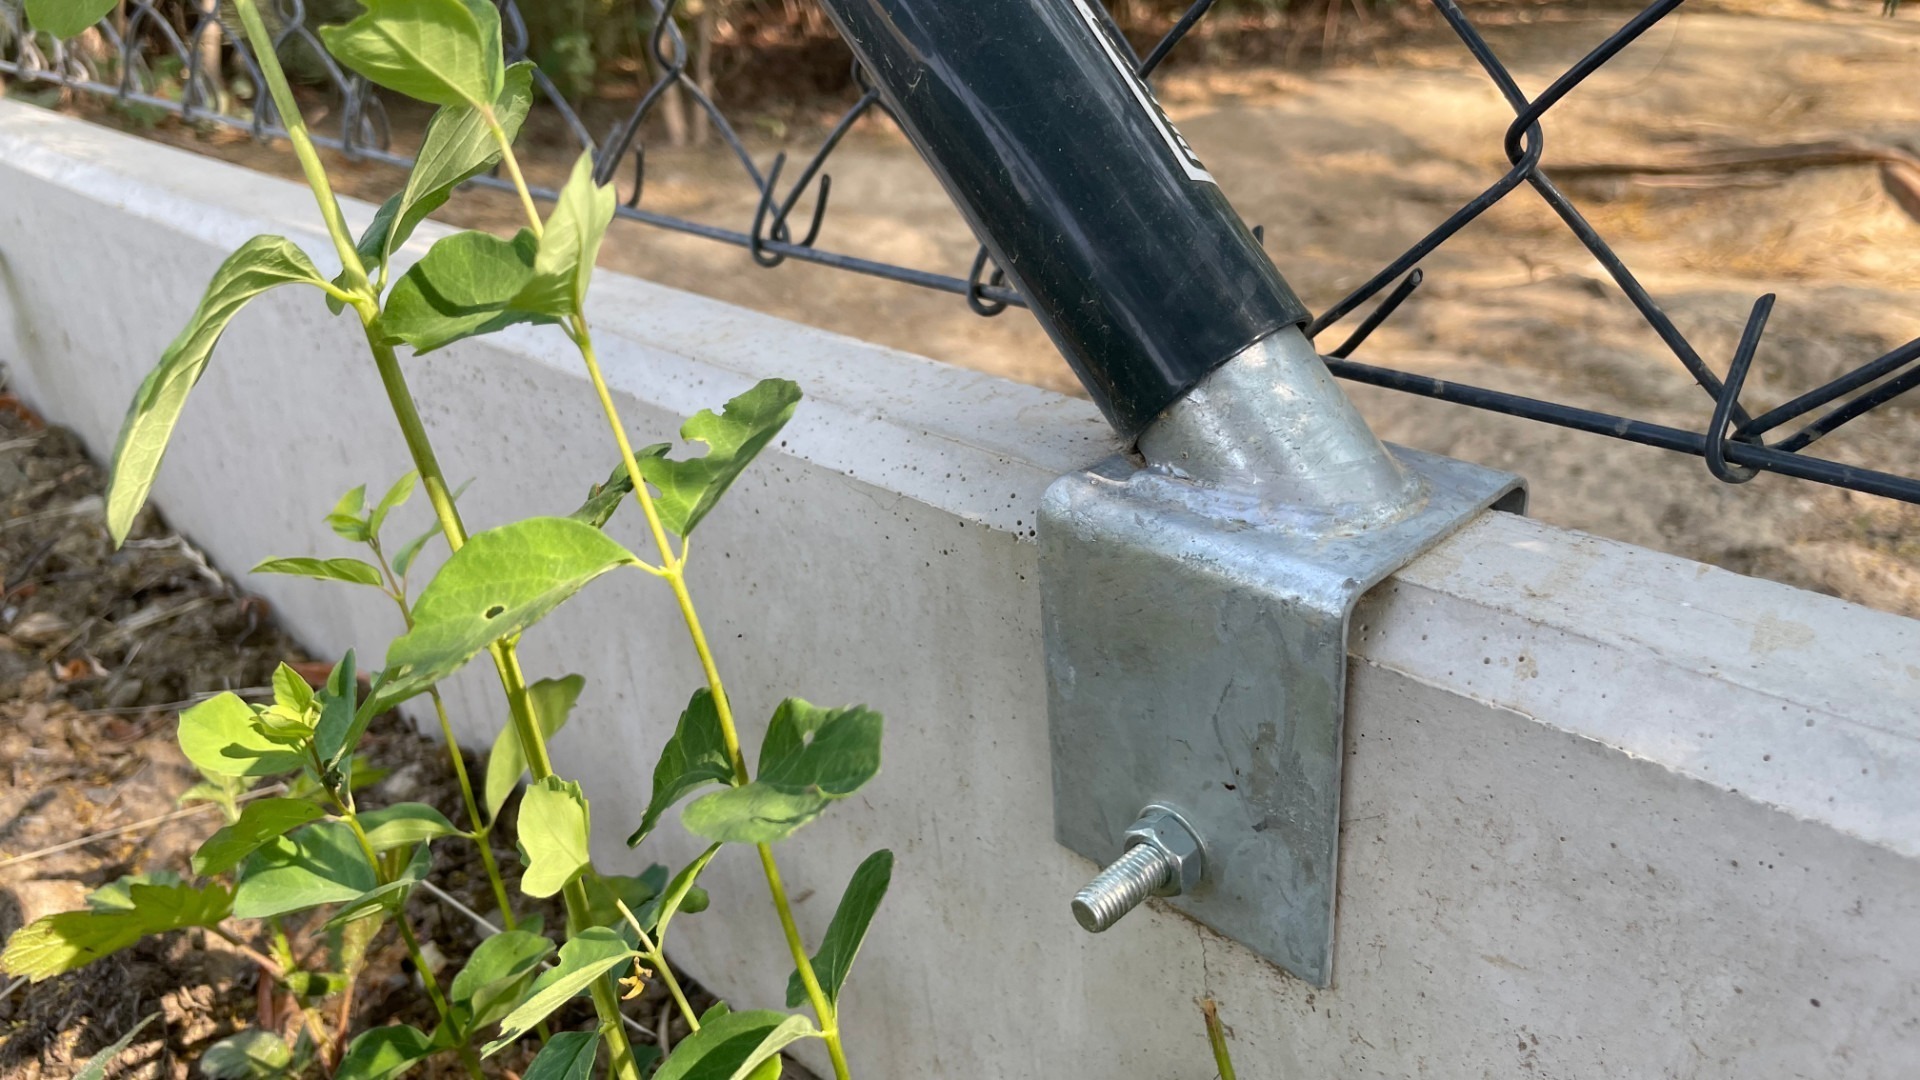 Podhrabová betonová deska pod plot jako náhrada podezdívky – detail uchycení držáku na plotovou vzpěru.